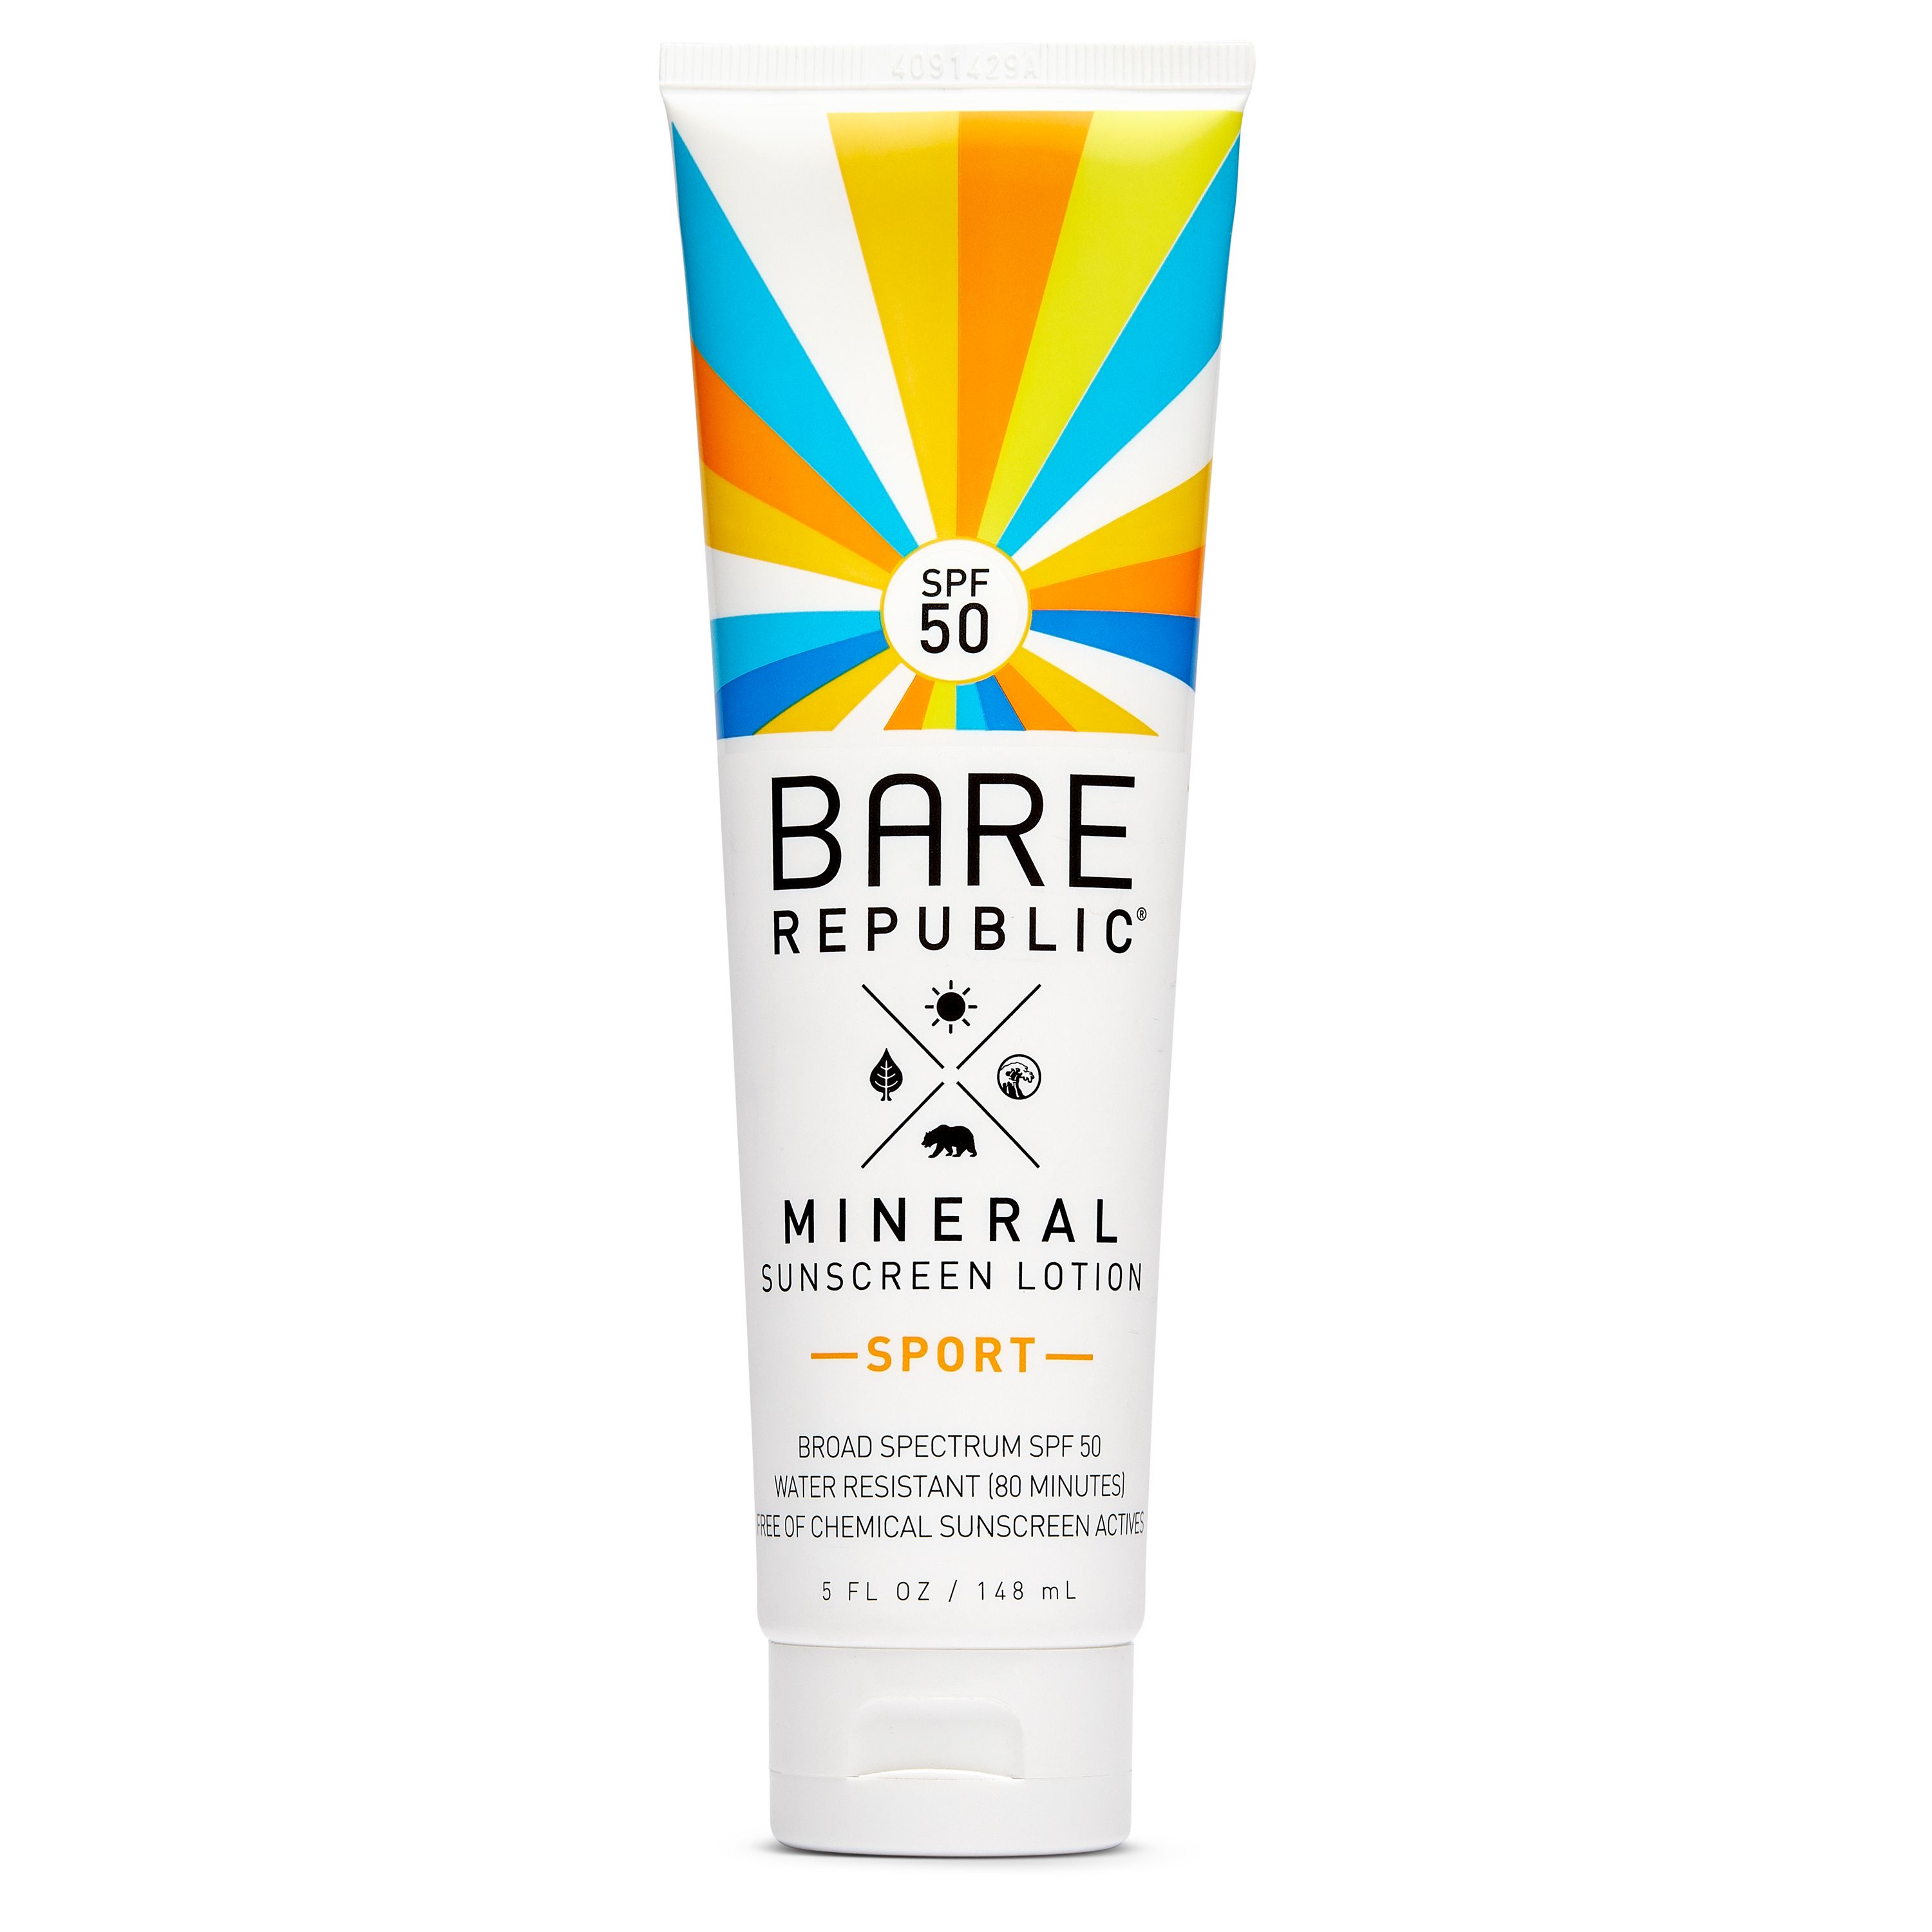 Bare Republic Mineral Sport Sunscreen Lotion, SPF 50 - 5 fl oz